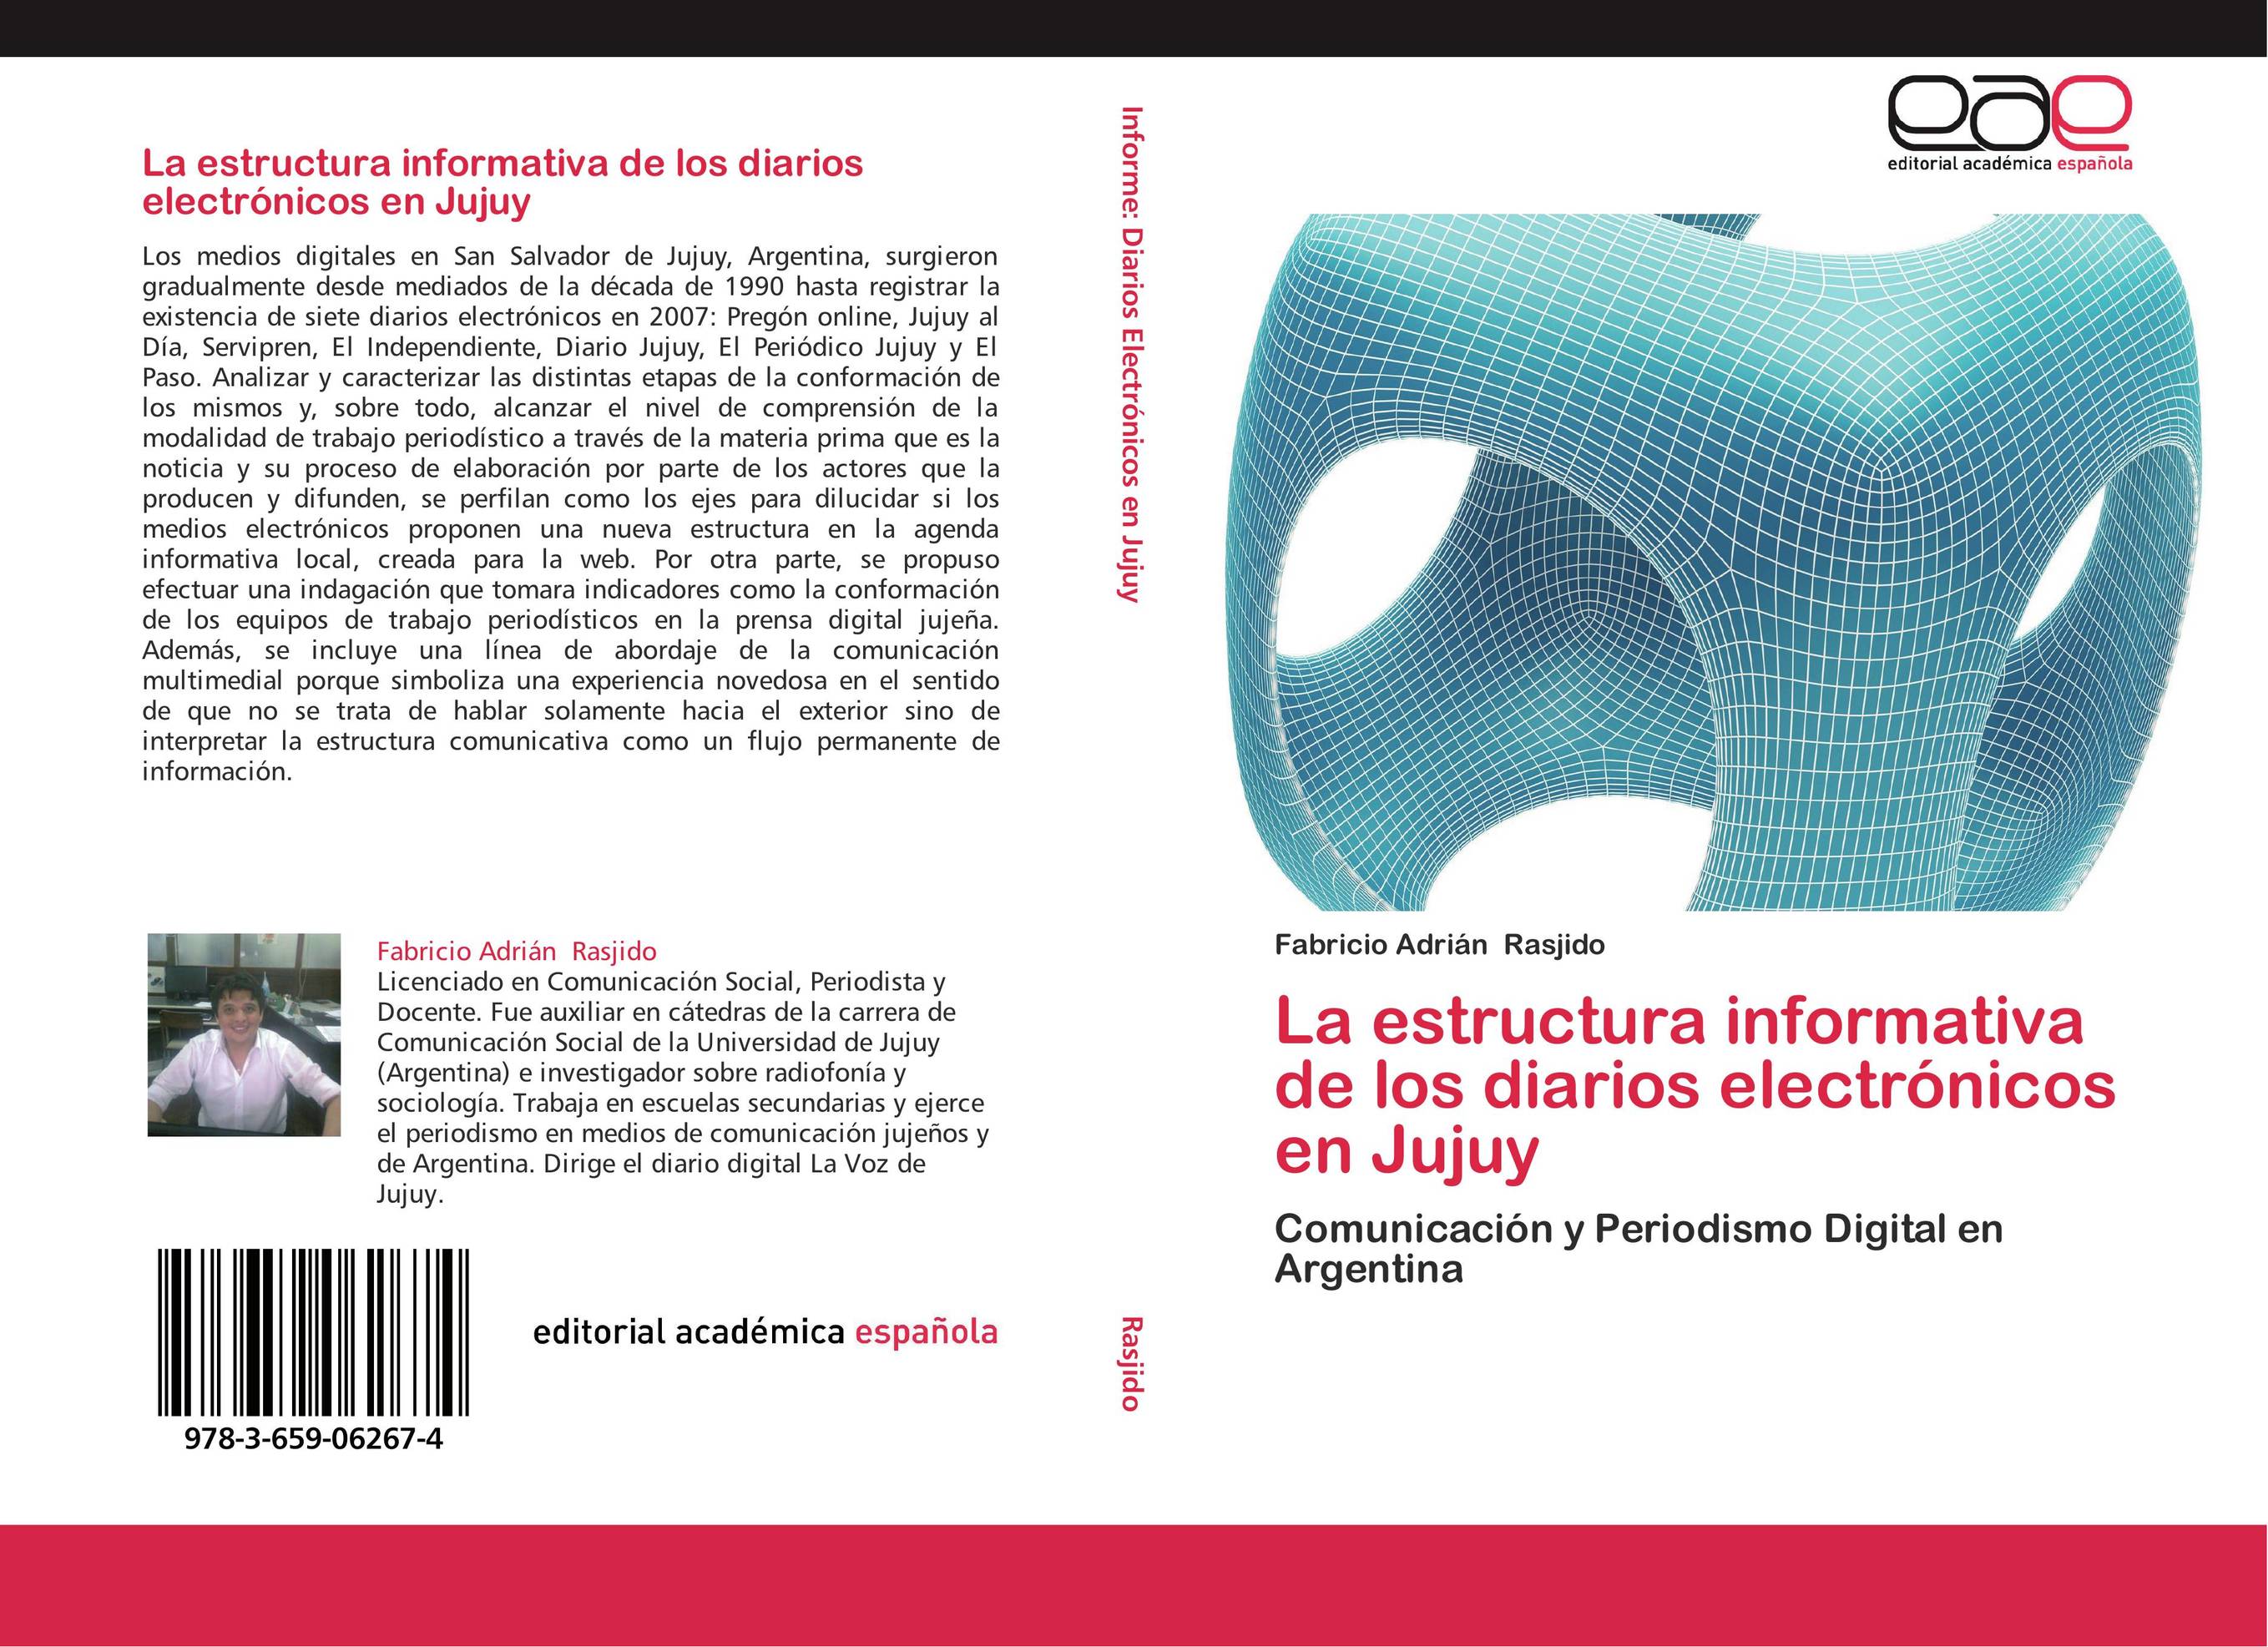 La estructura informativa de los diarios electrónicos en Jujuy